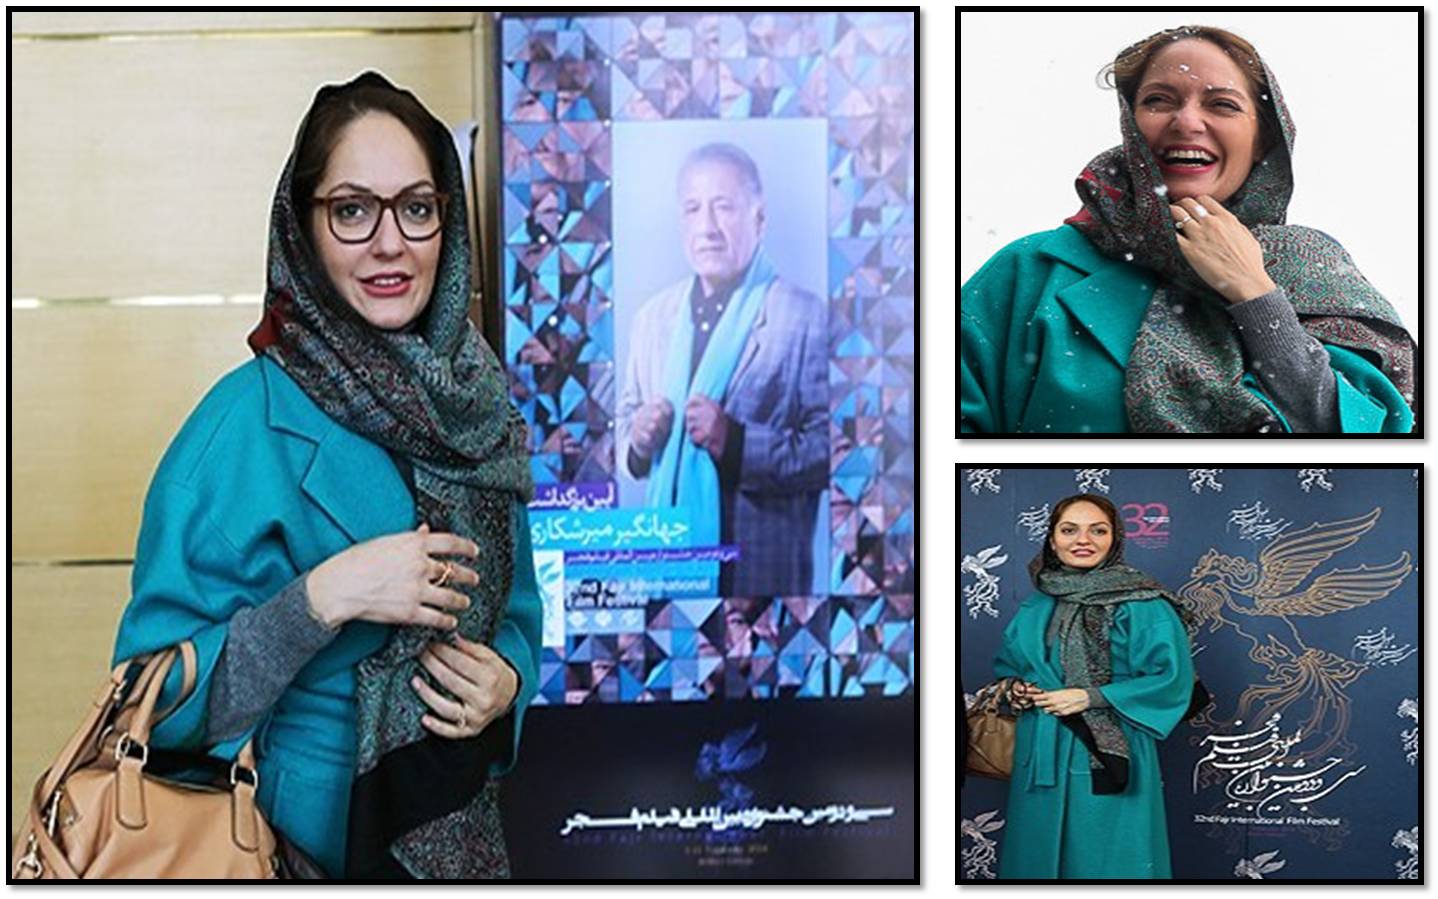 عکس های مهناز افشار در حاشیه روز چهارم جشنواره فیلم فجر